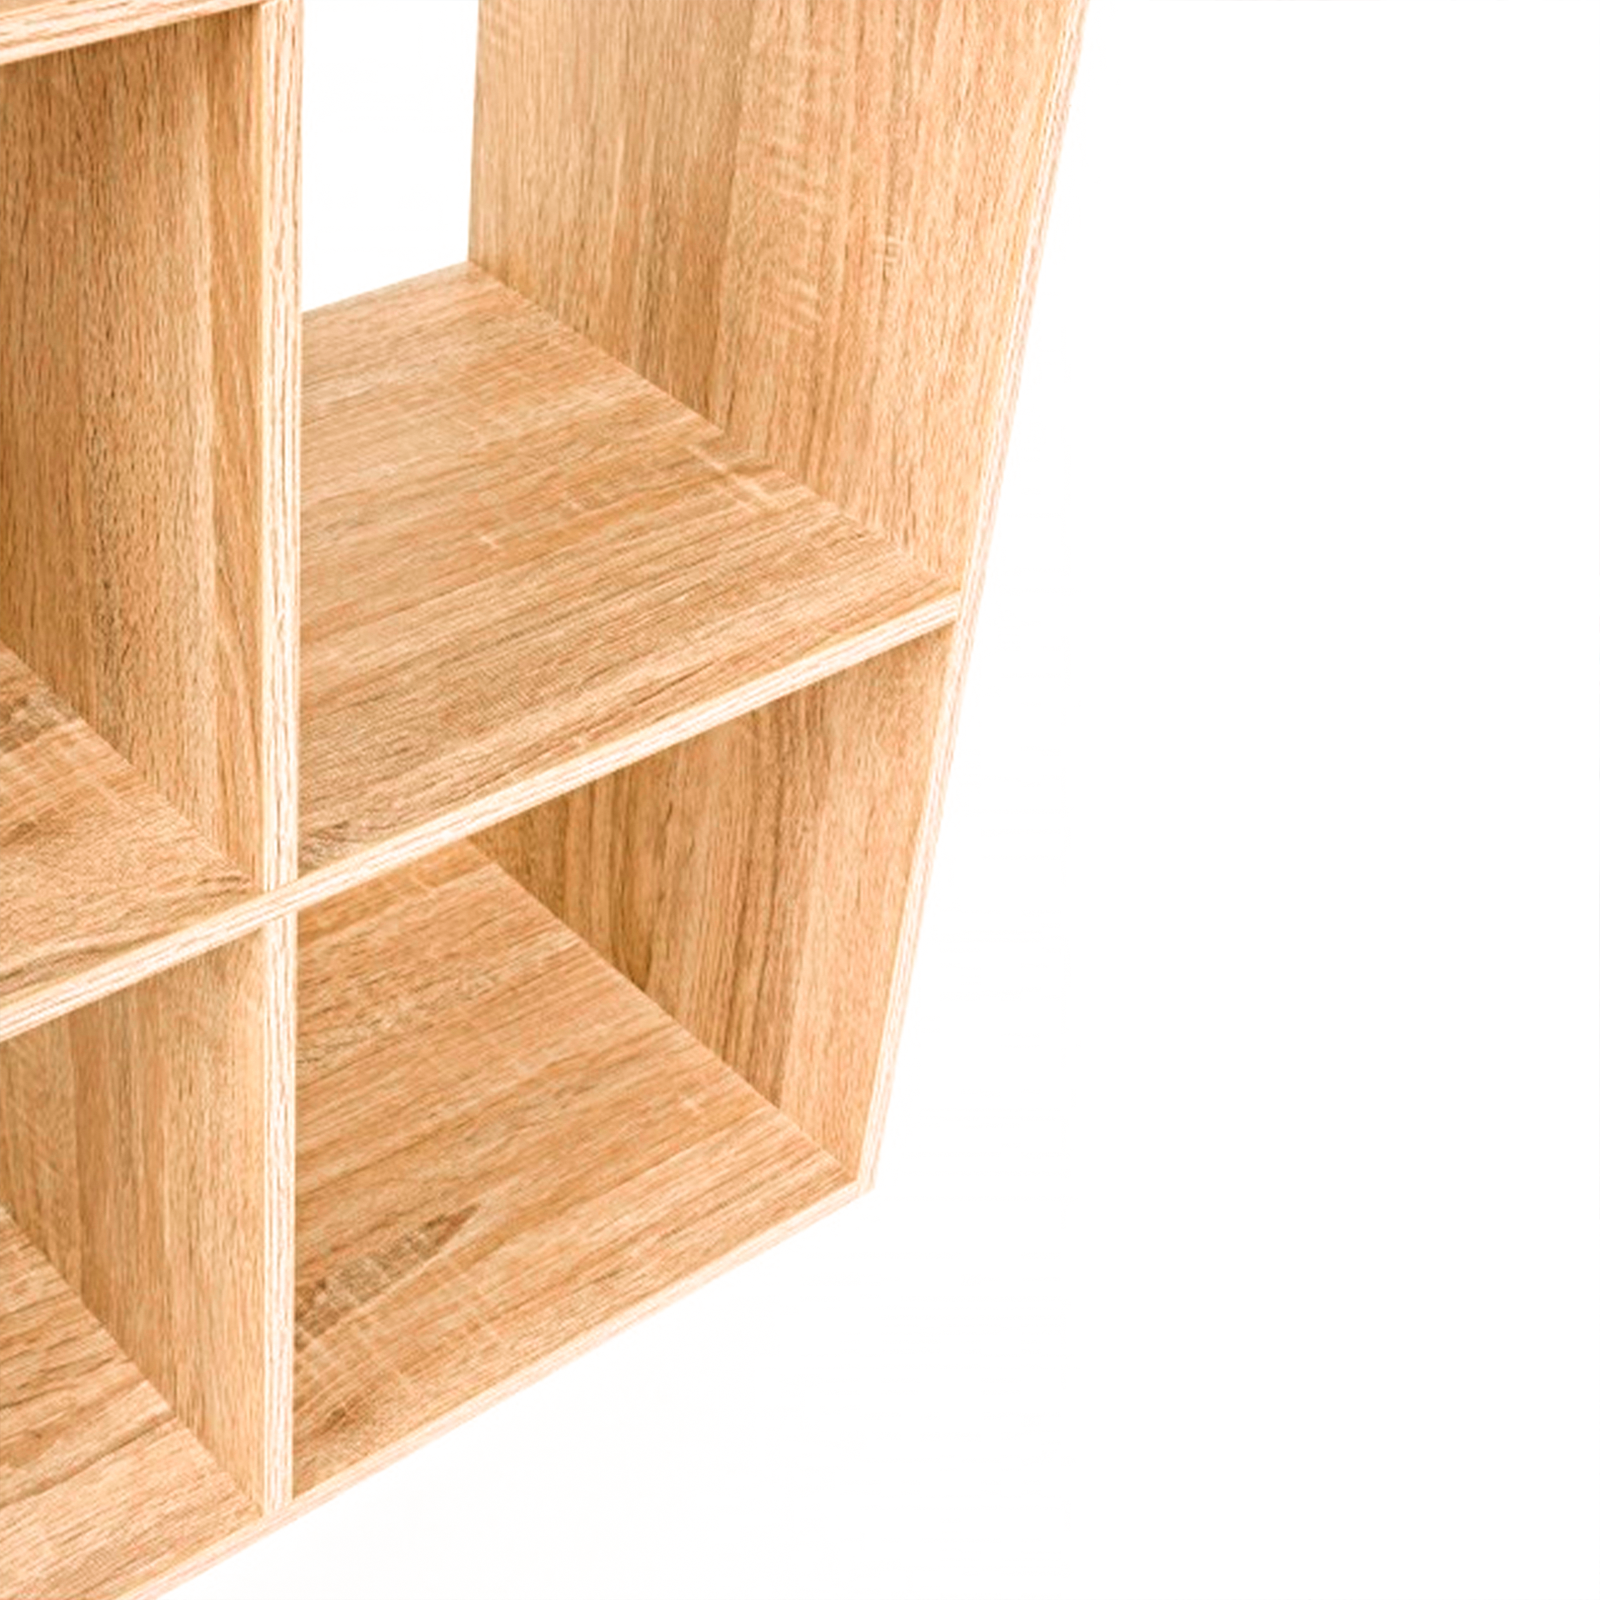 Bibliothèque ouverte Cubo avec 10 compartiments en bois mélaminé 121x30 cm 121h